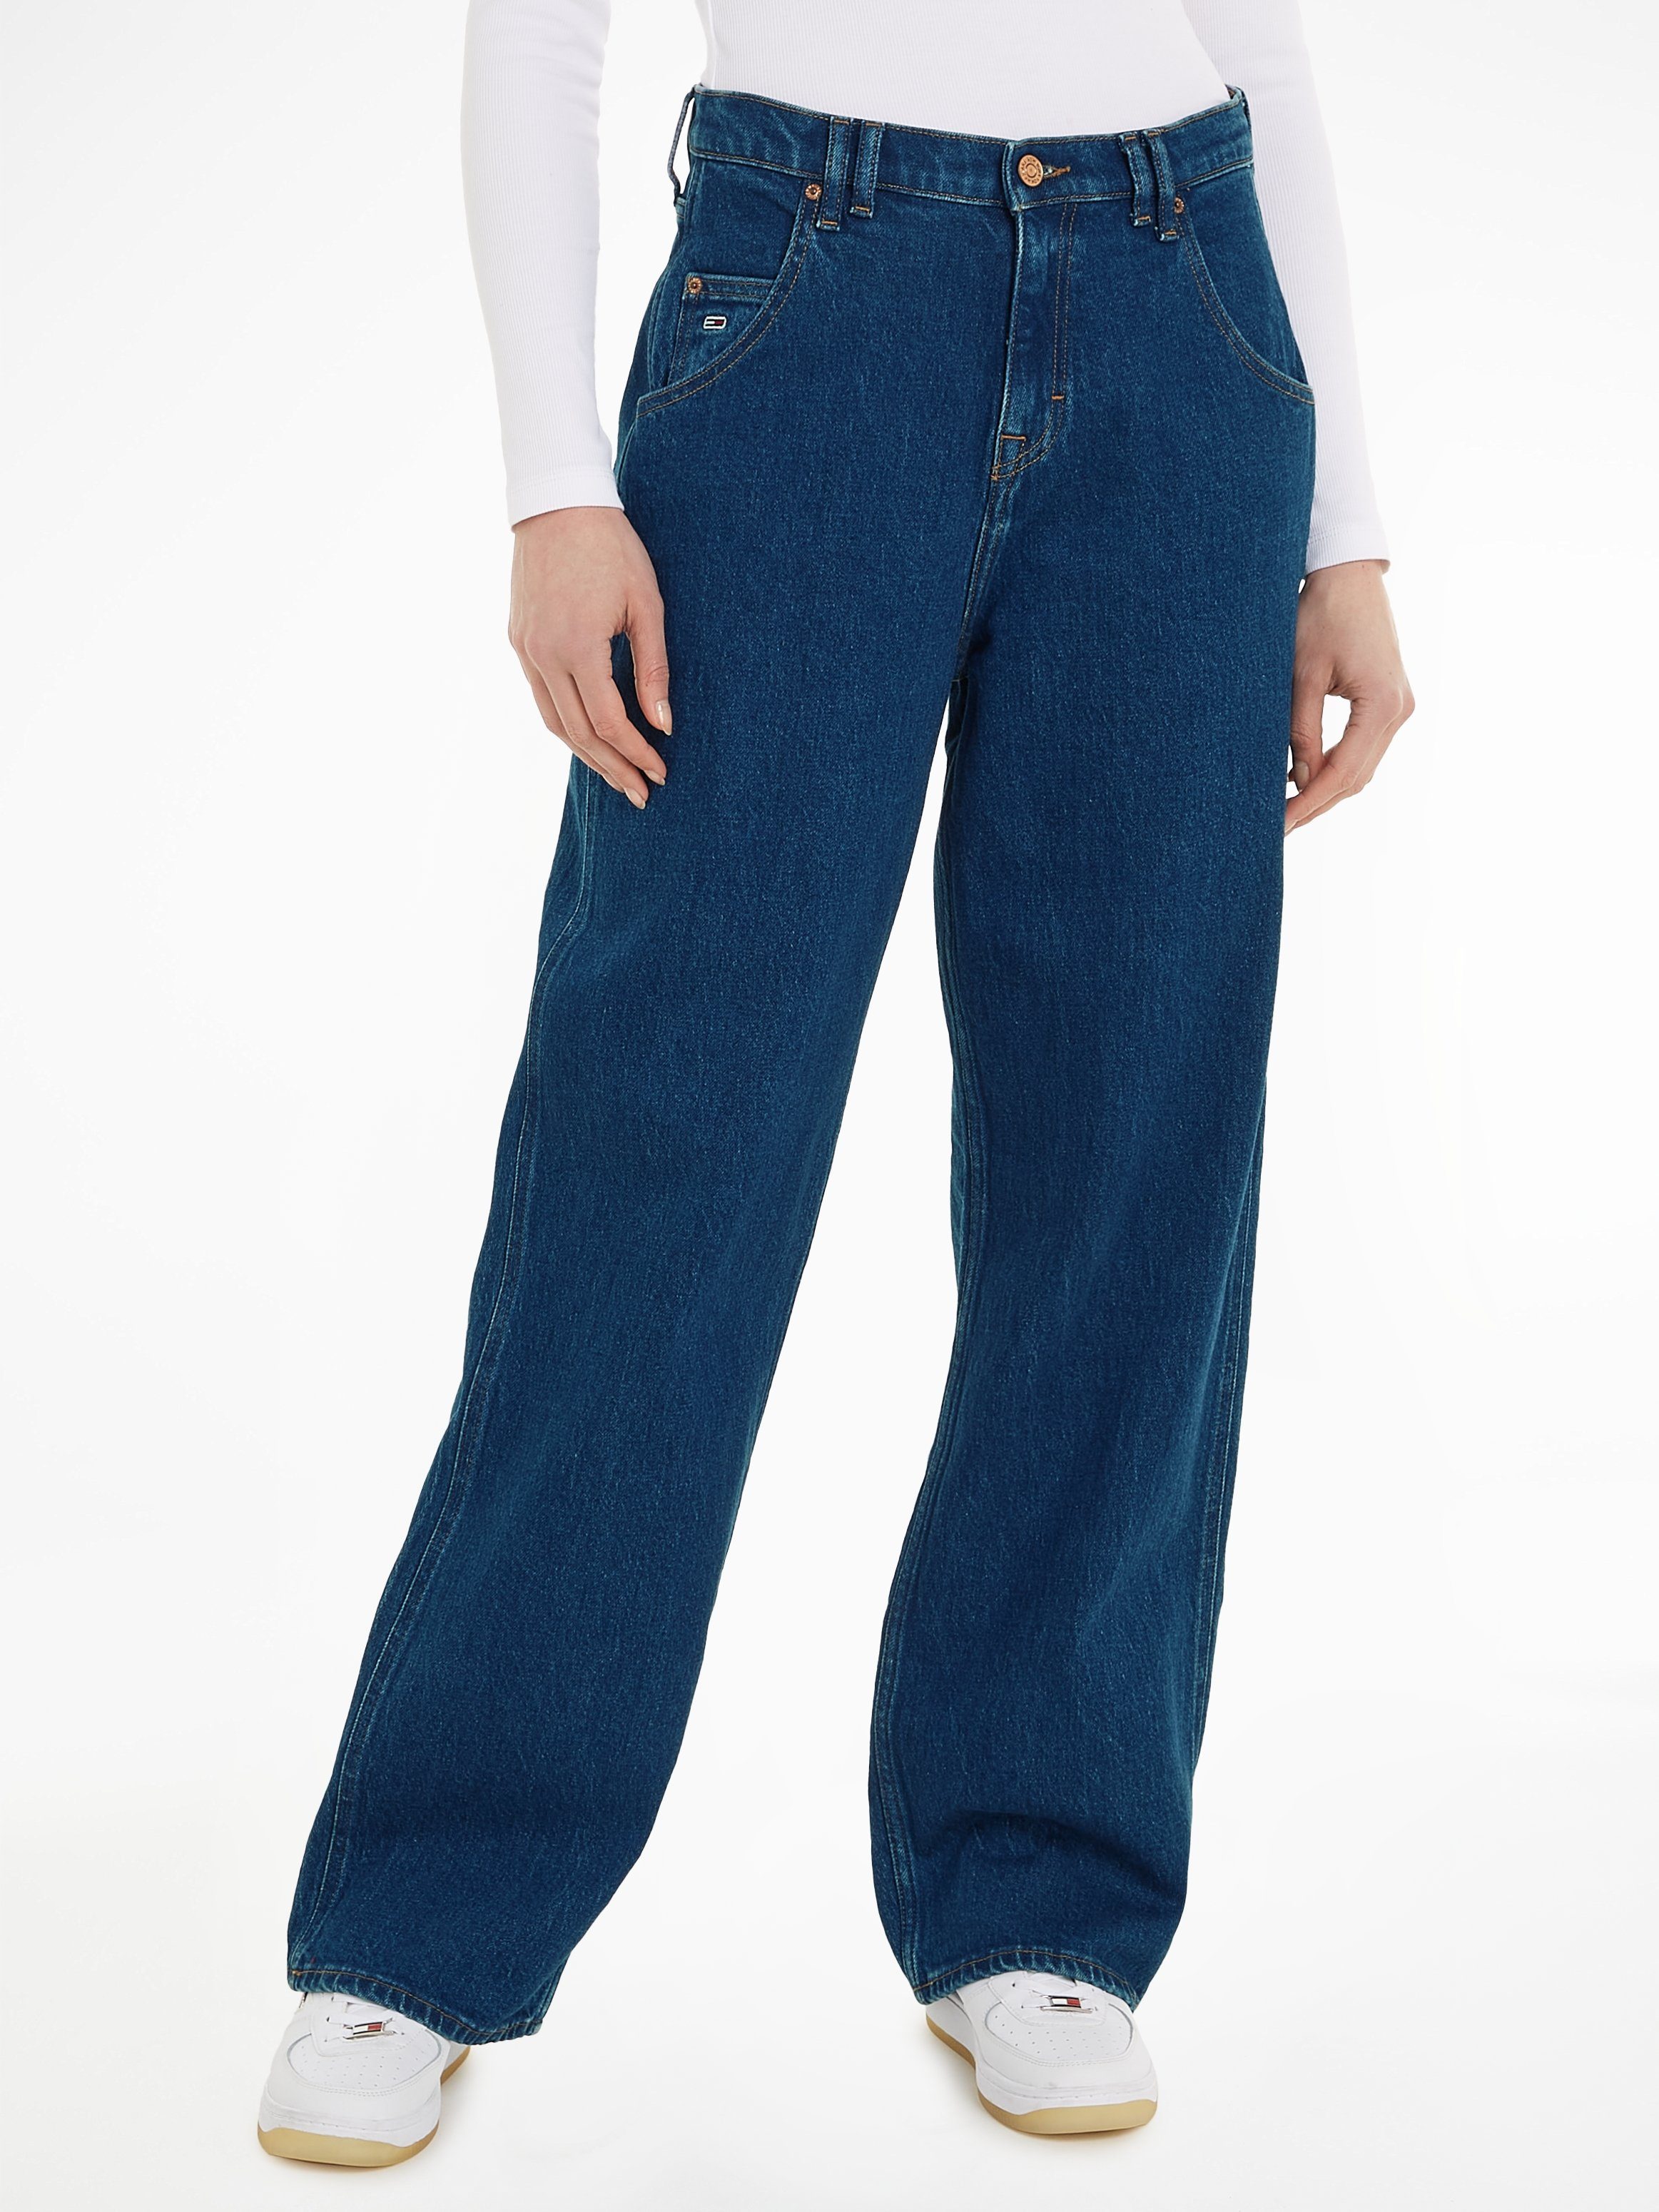 Jeans Tommy Destroyed leichten Effekten BGY mit Jeans Weite DAISY LW BH6110 JEAN